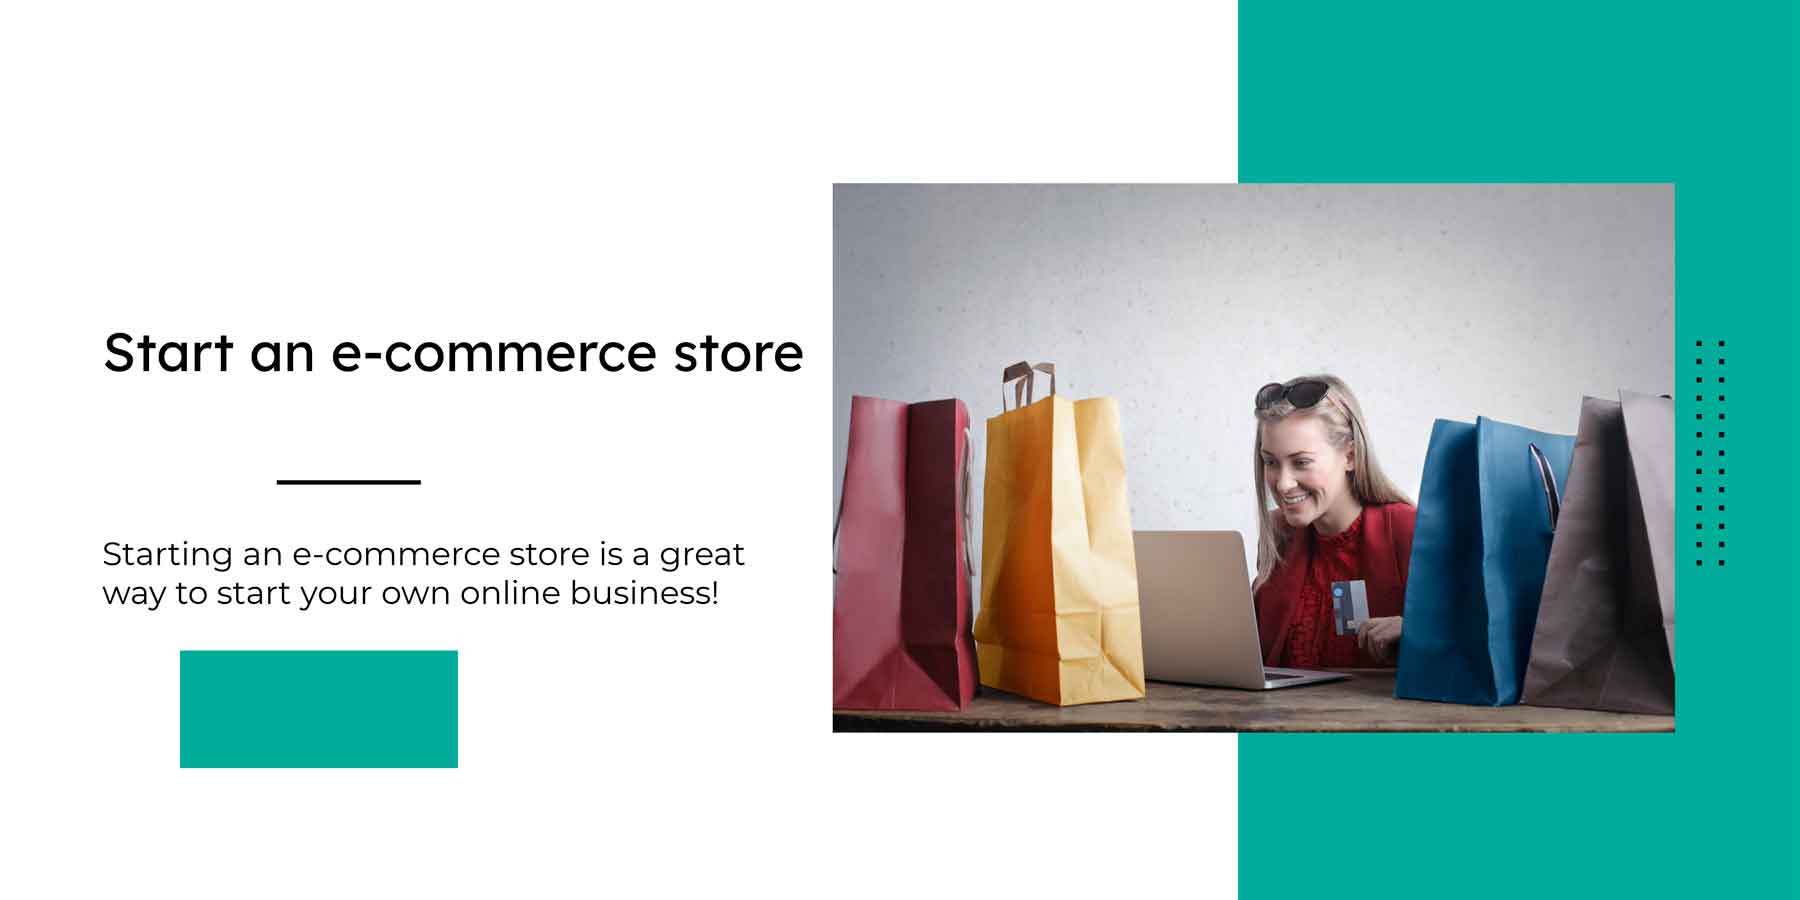 Start an e-commerce store